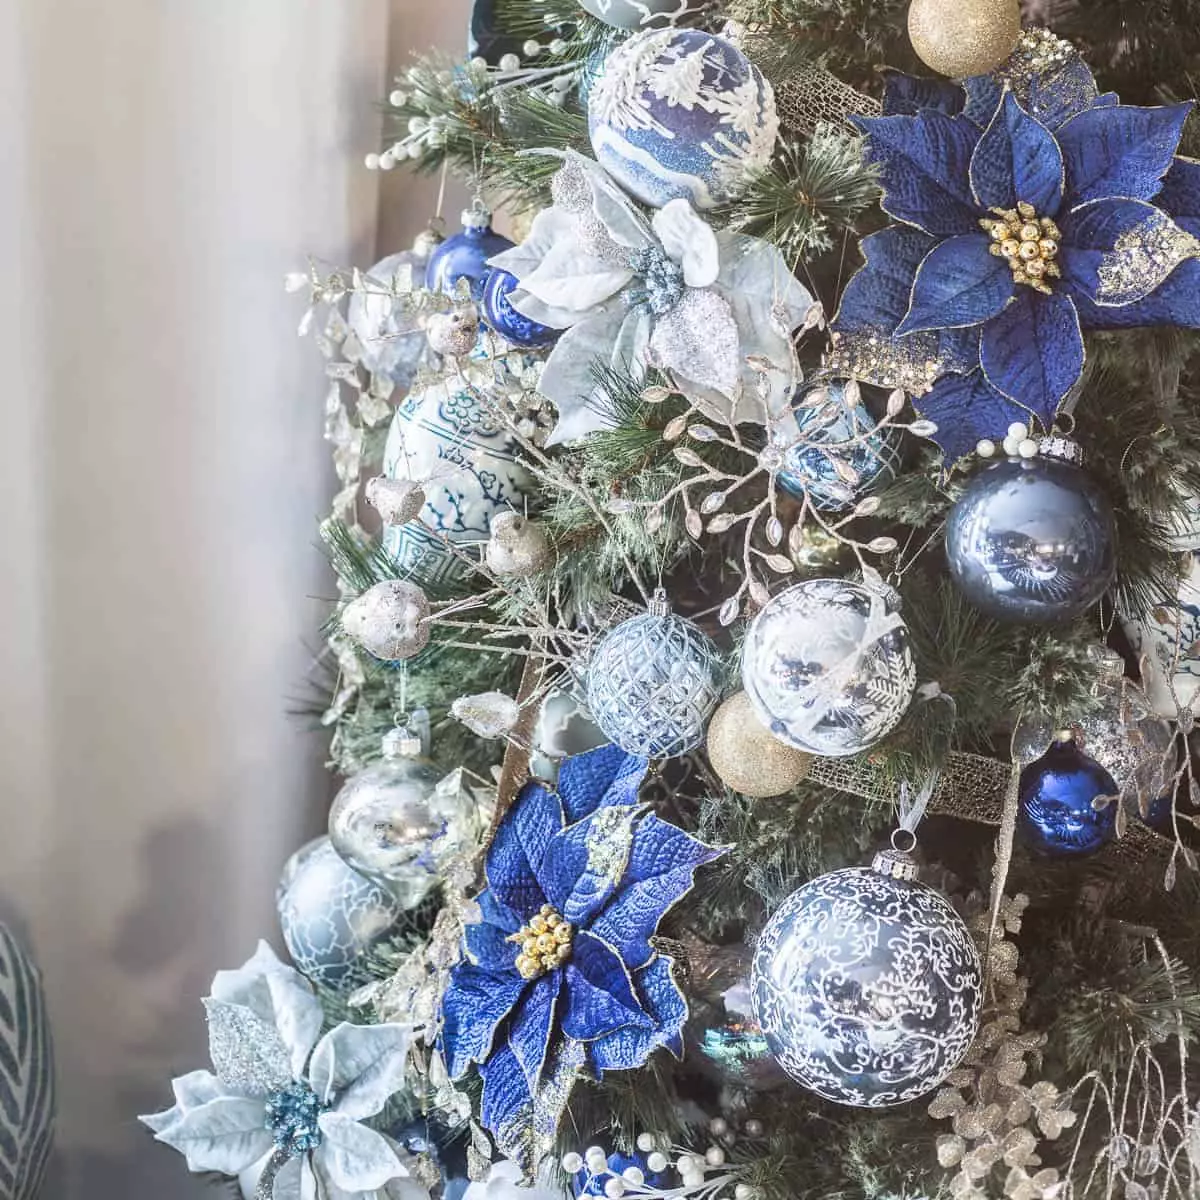 Làm thế nào để trang trí cây Giáng sinh màu xanh lam? 30 ảnh Làm thế nào để ăn mặc với những quả bóng và các trang trí khác trong tông màu xanh và bạc? 7627_7